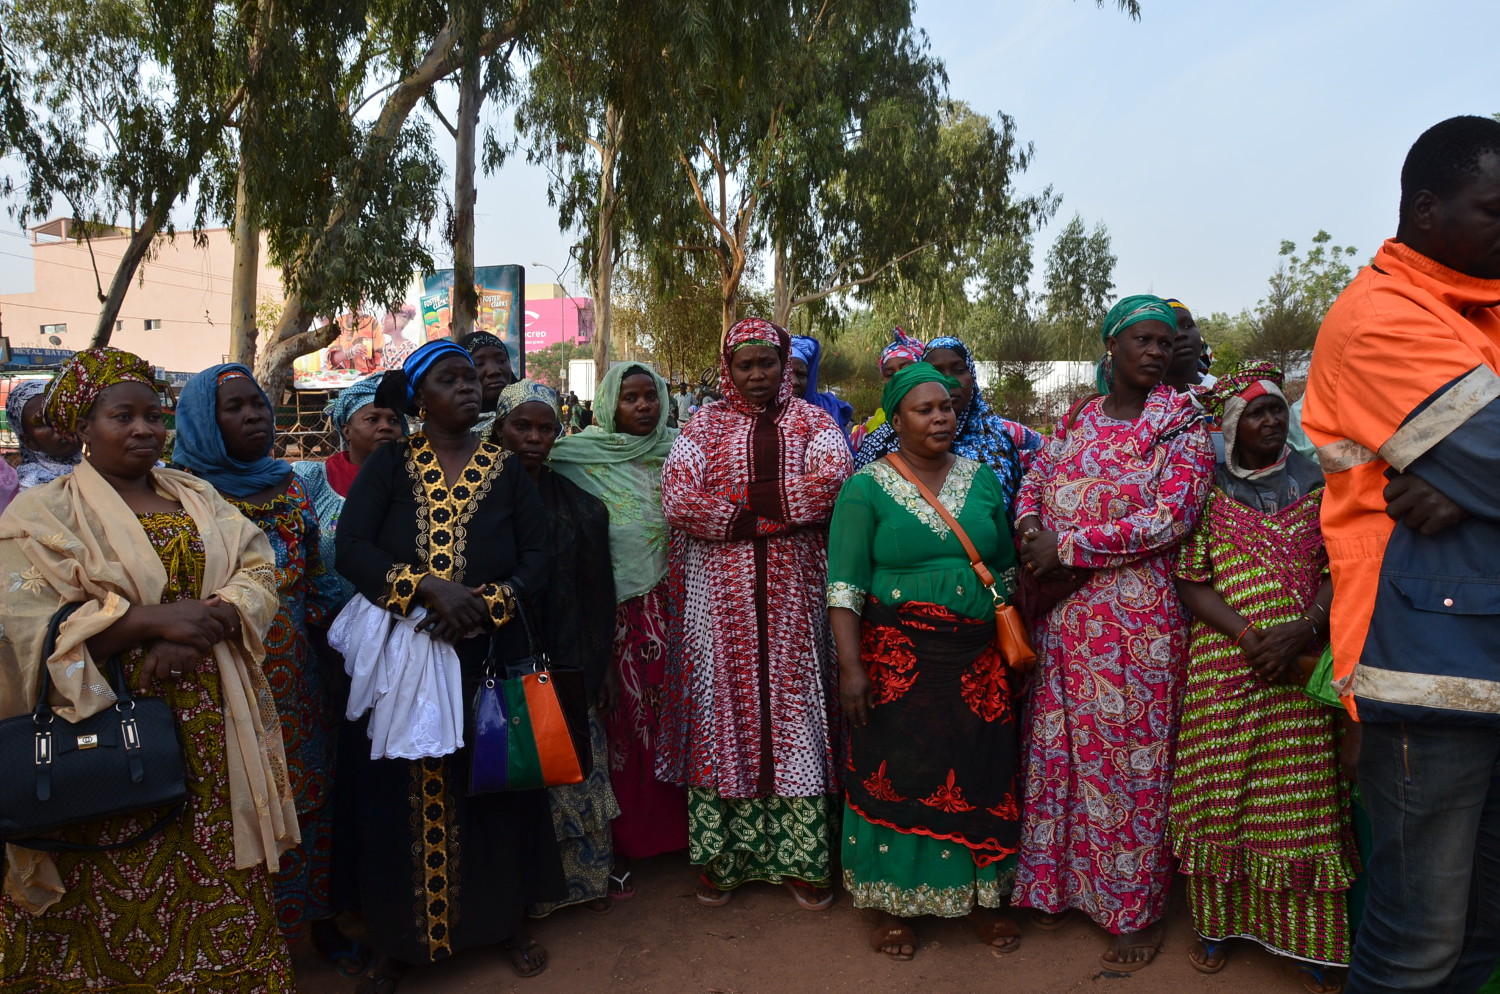 8 mars au Mali : les femmes cherchent leurs voix